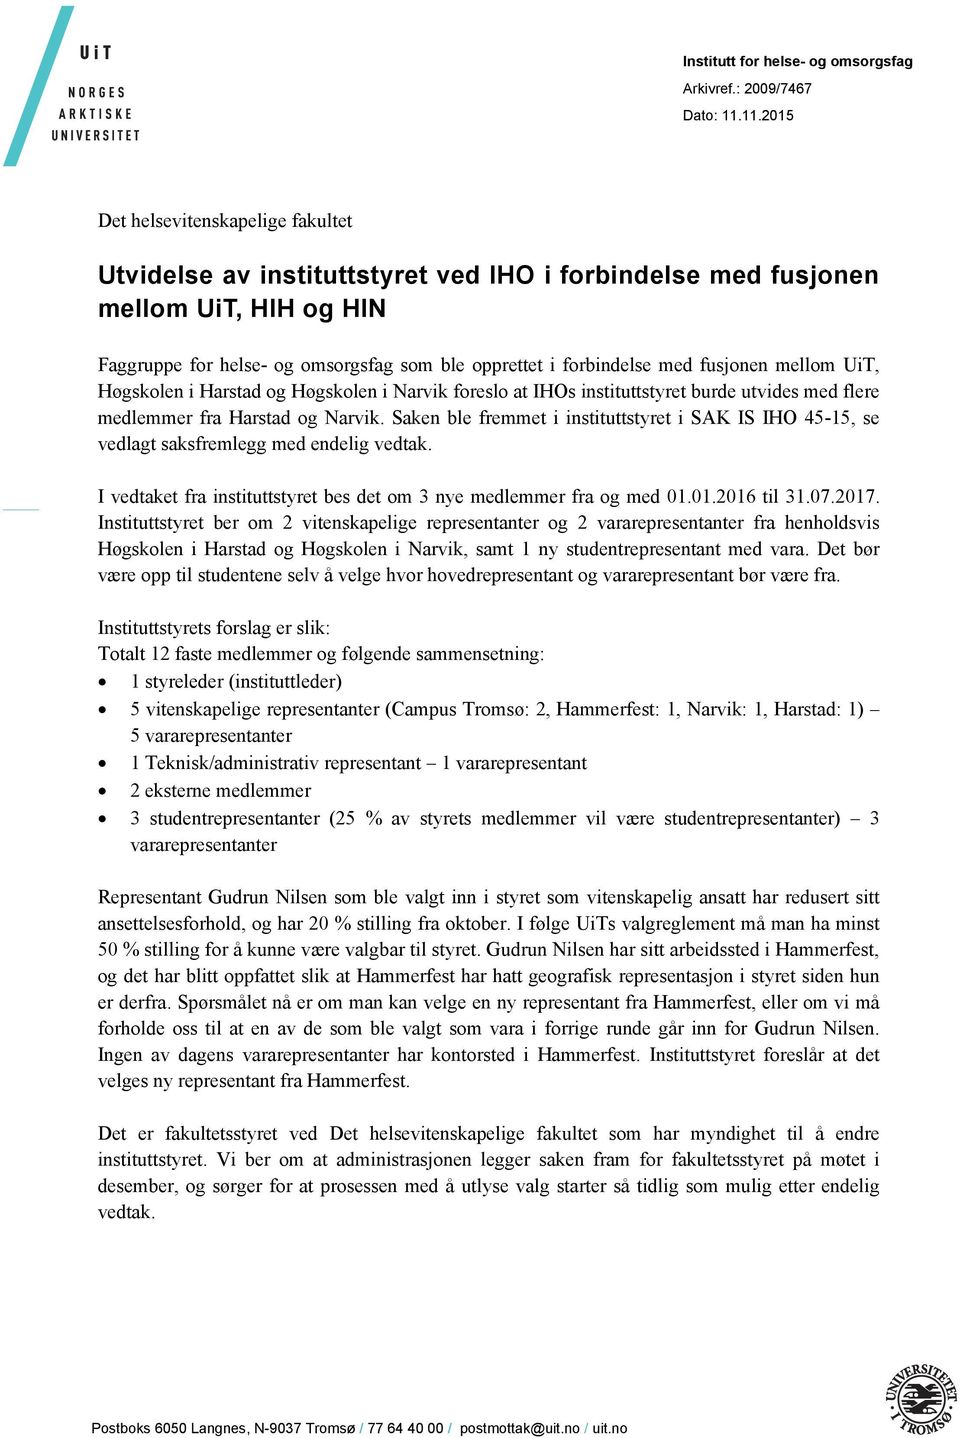 fusjonen mellom UiT, Høgskolen i Harstad og Høgskolen i Narvik foreslo at IHOs instituttstyret burde utvides med flere medlemmer fra Harstad og Narvik.